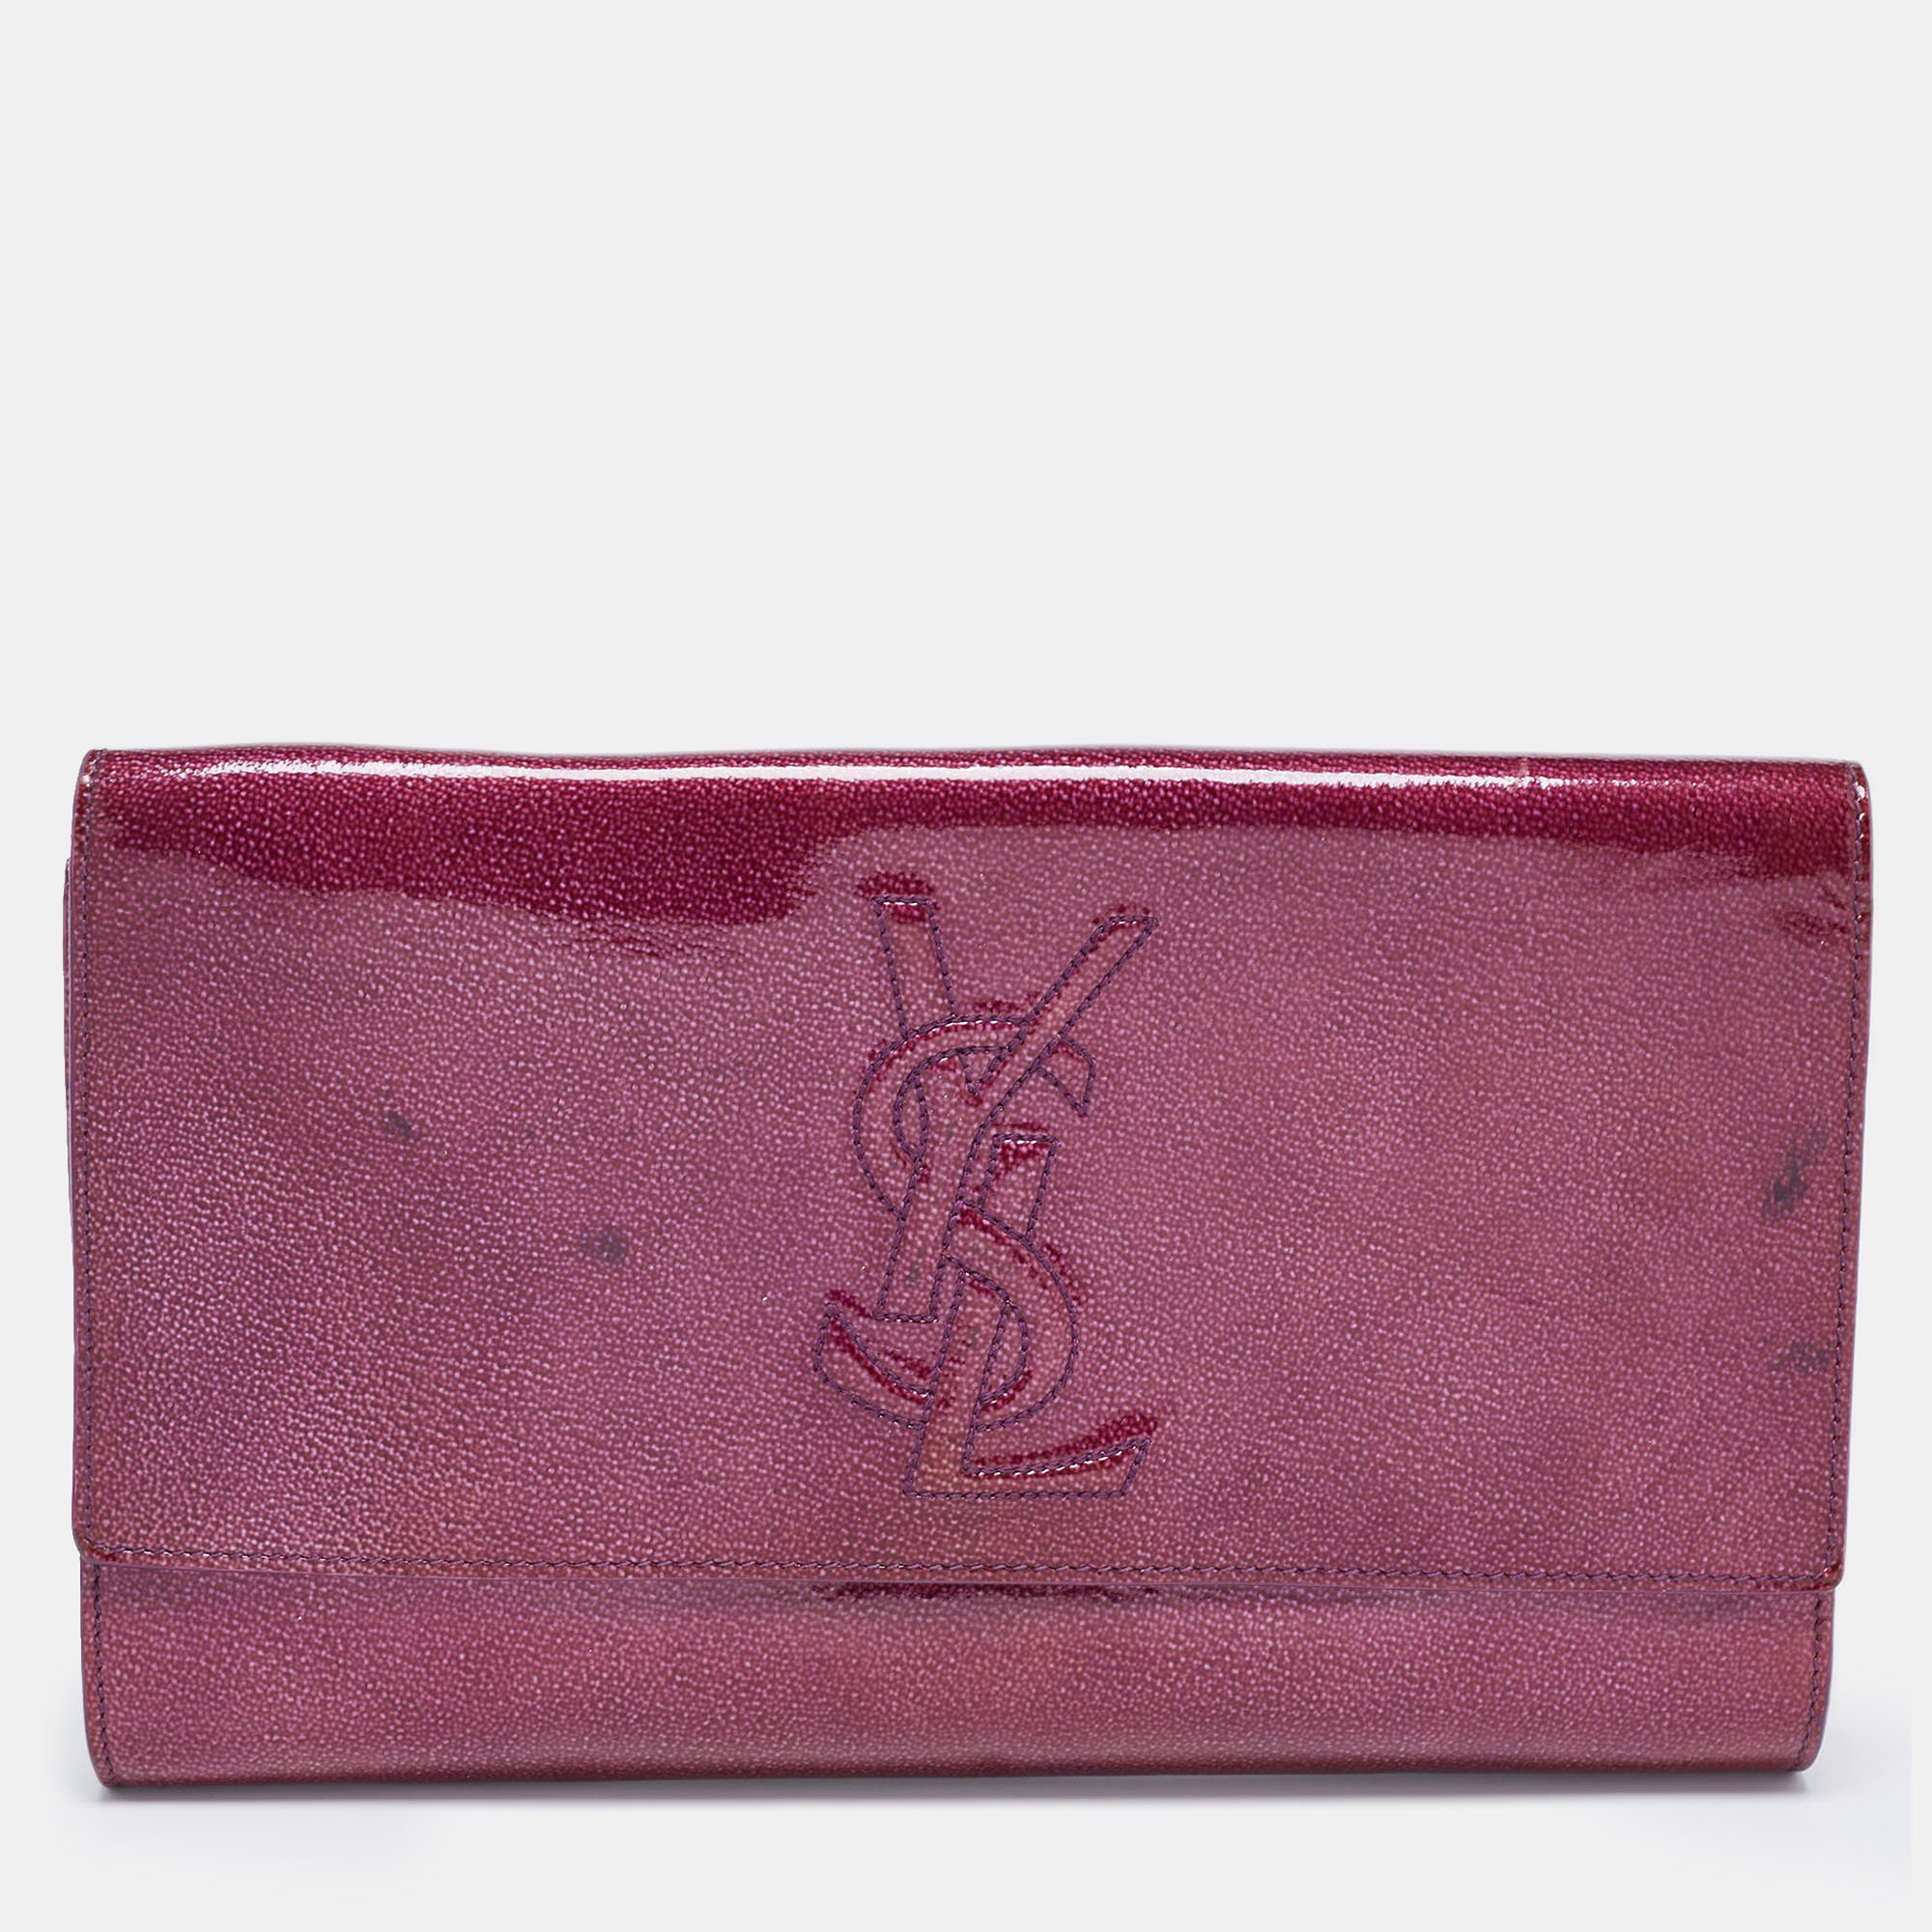 Pre-owned Saint Laurent Purple Patent Leather Belle De Jour Flap Clutch